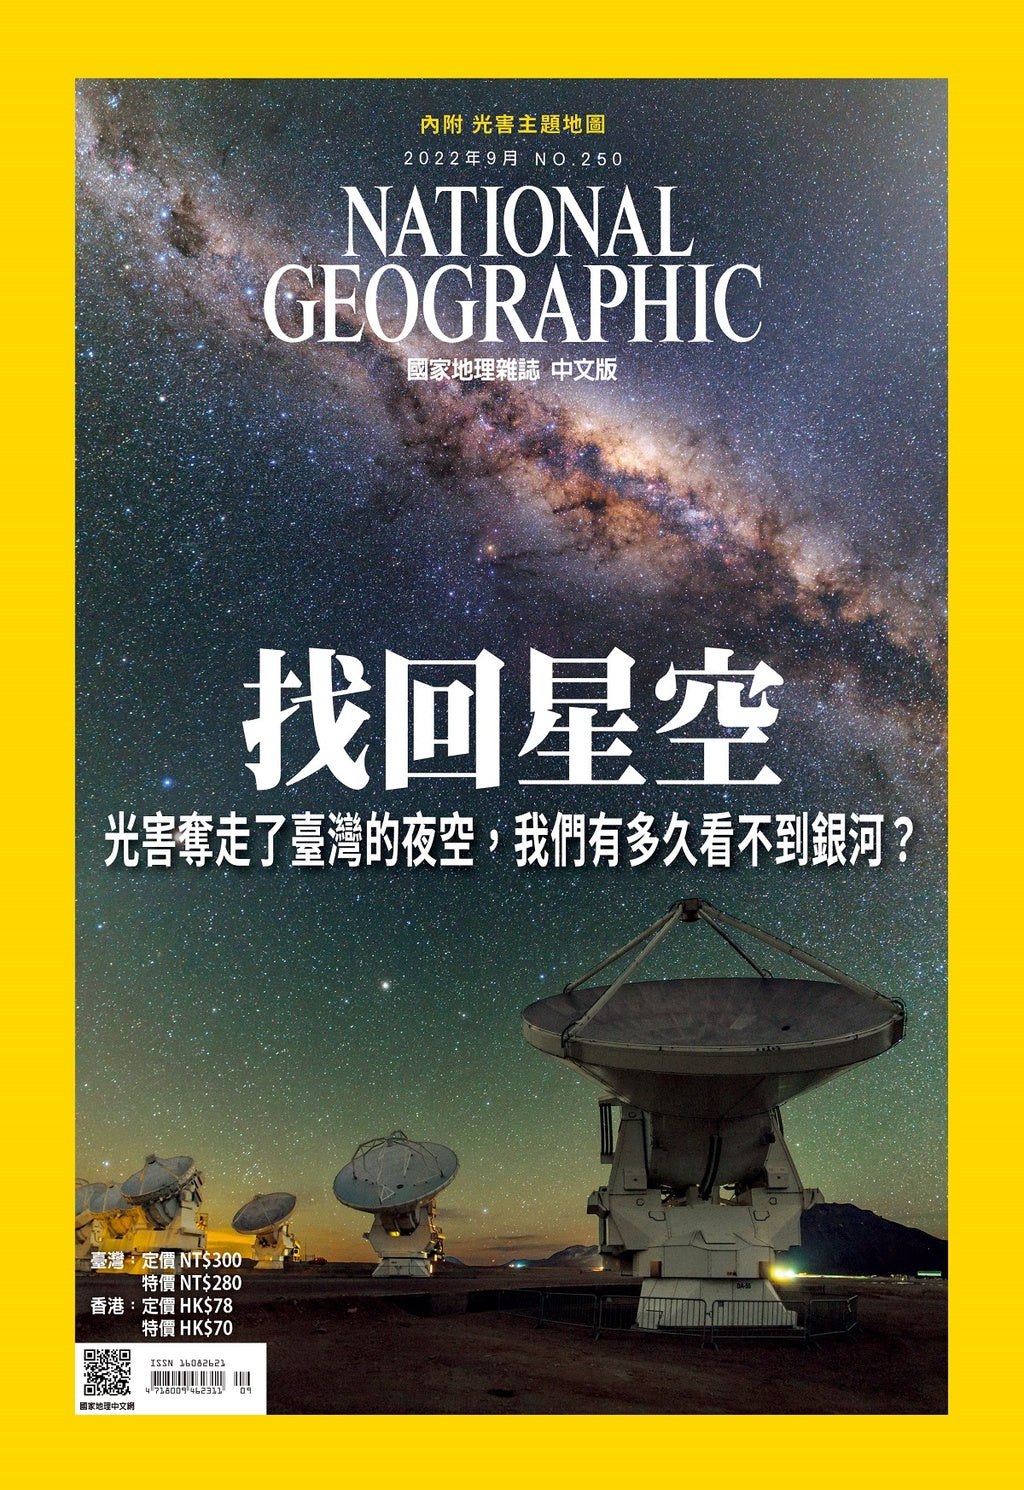 國家地理雜誌 中文版 2022年9月 No.250 找回星空